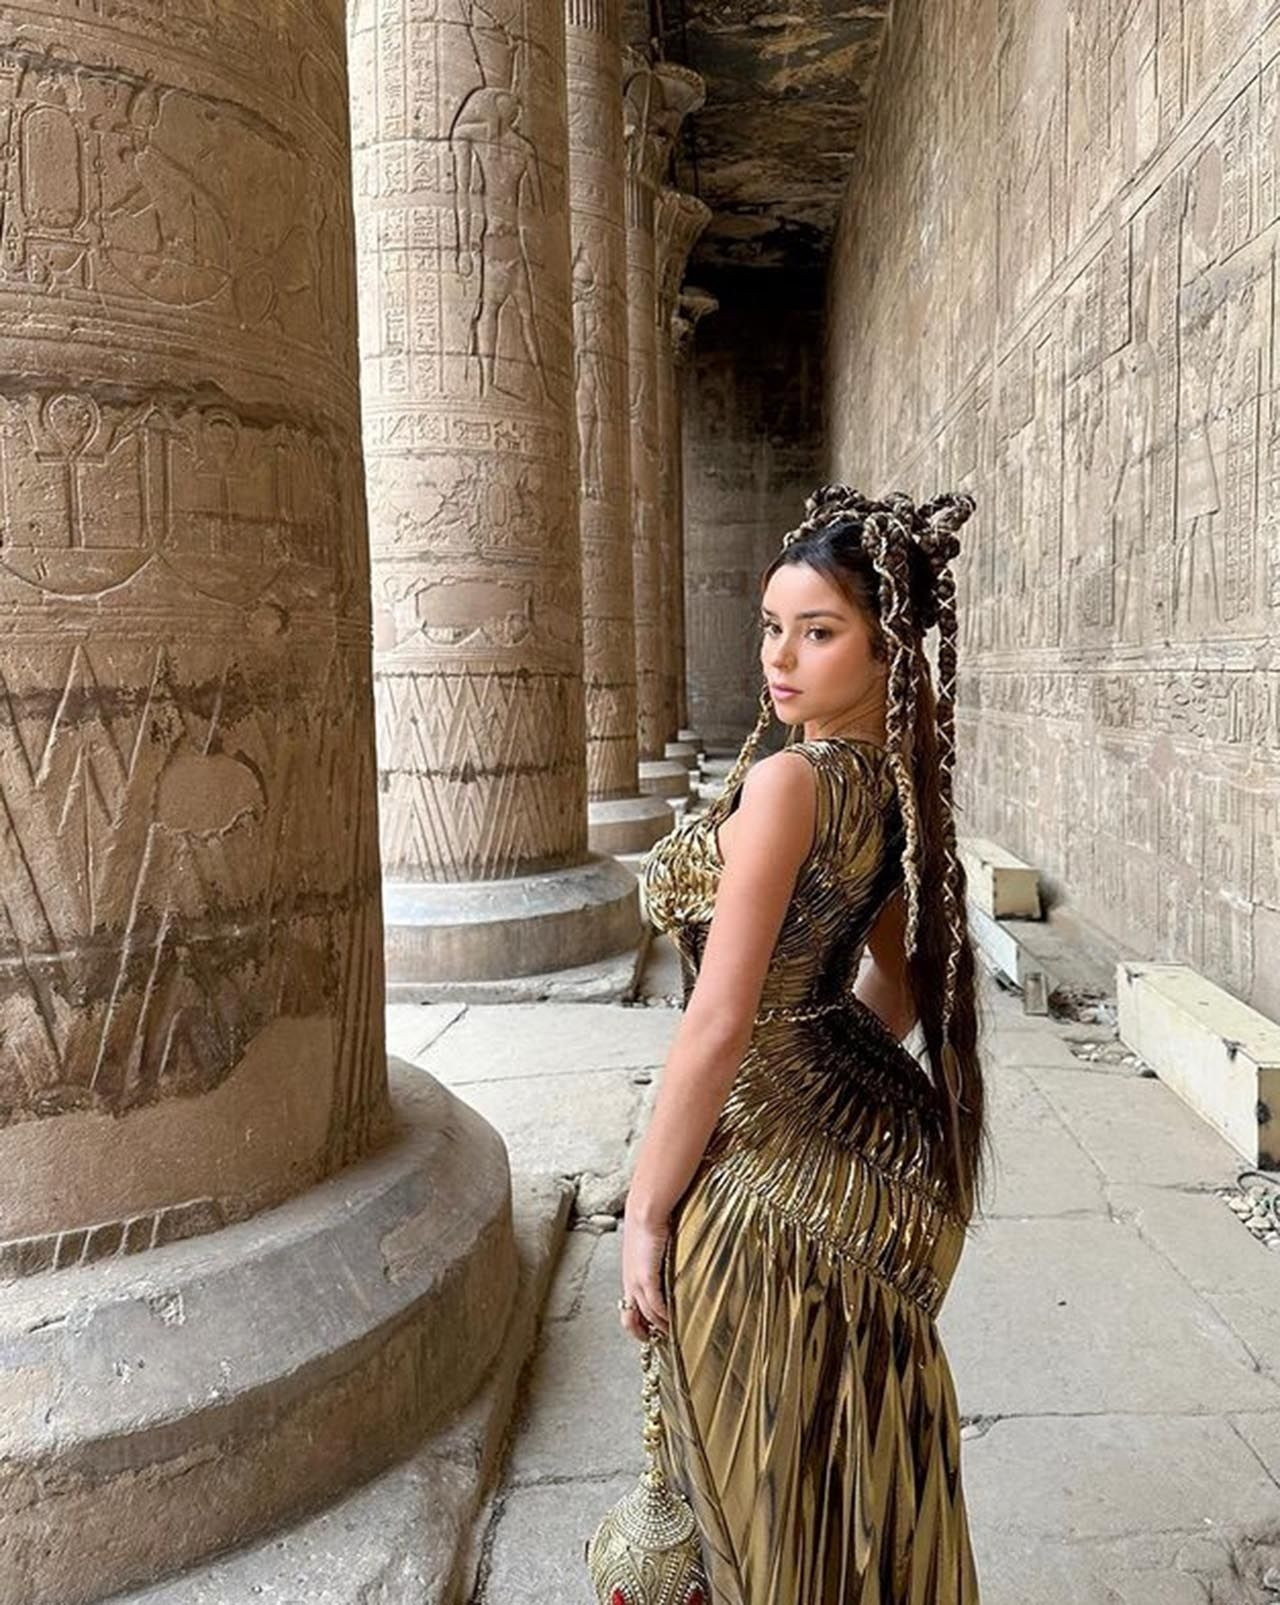 Ünlü model Demi Rose'un cesur pozları Mısır'ı ayağa kaldırdı - Resim: 16